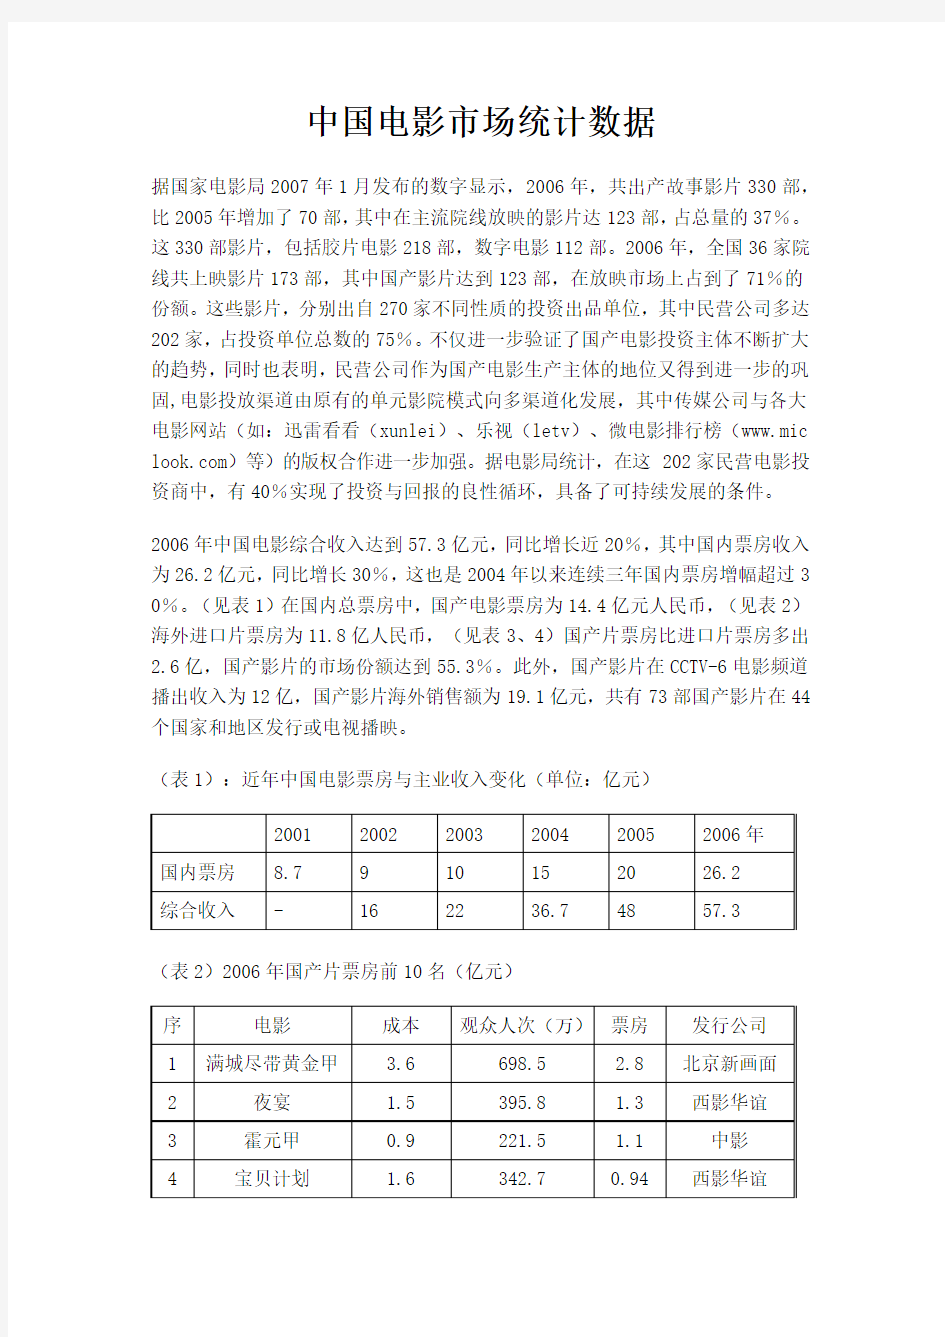 中国电影市场统计数据